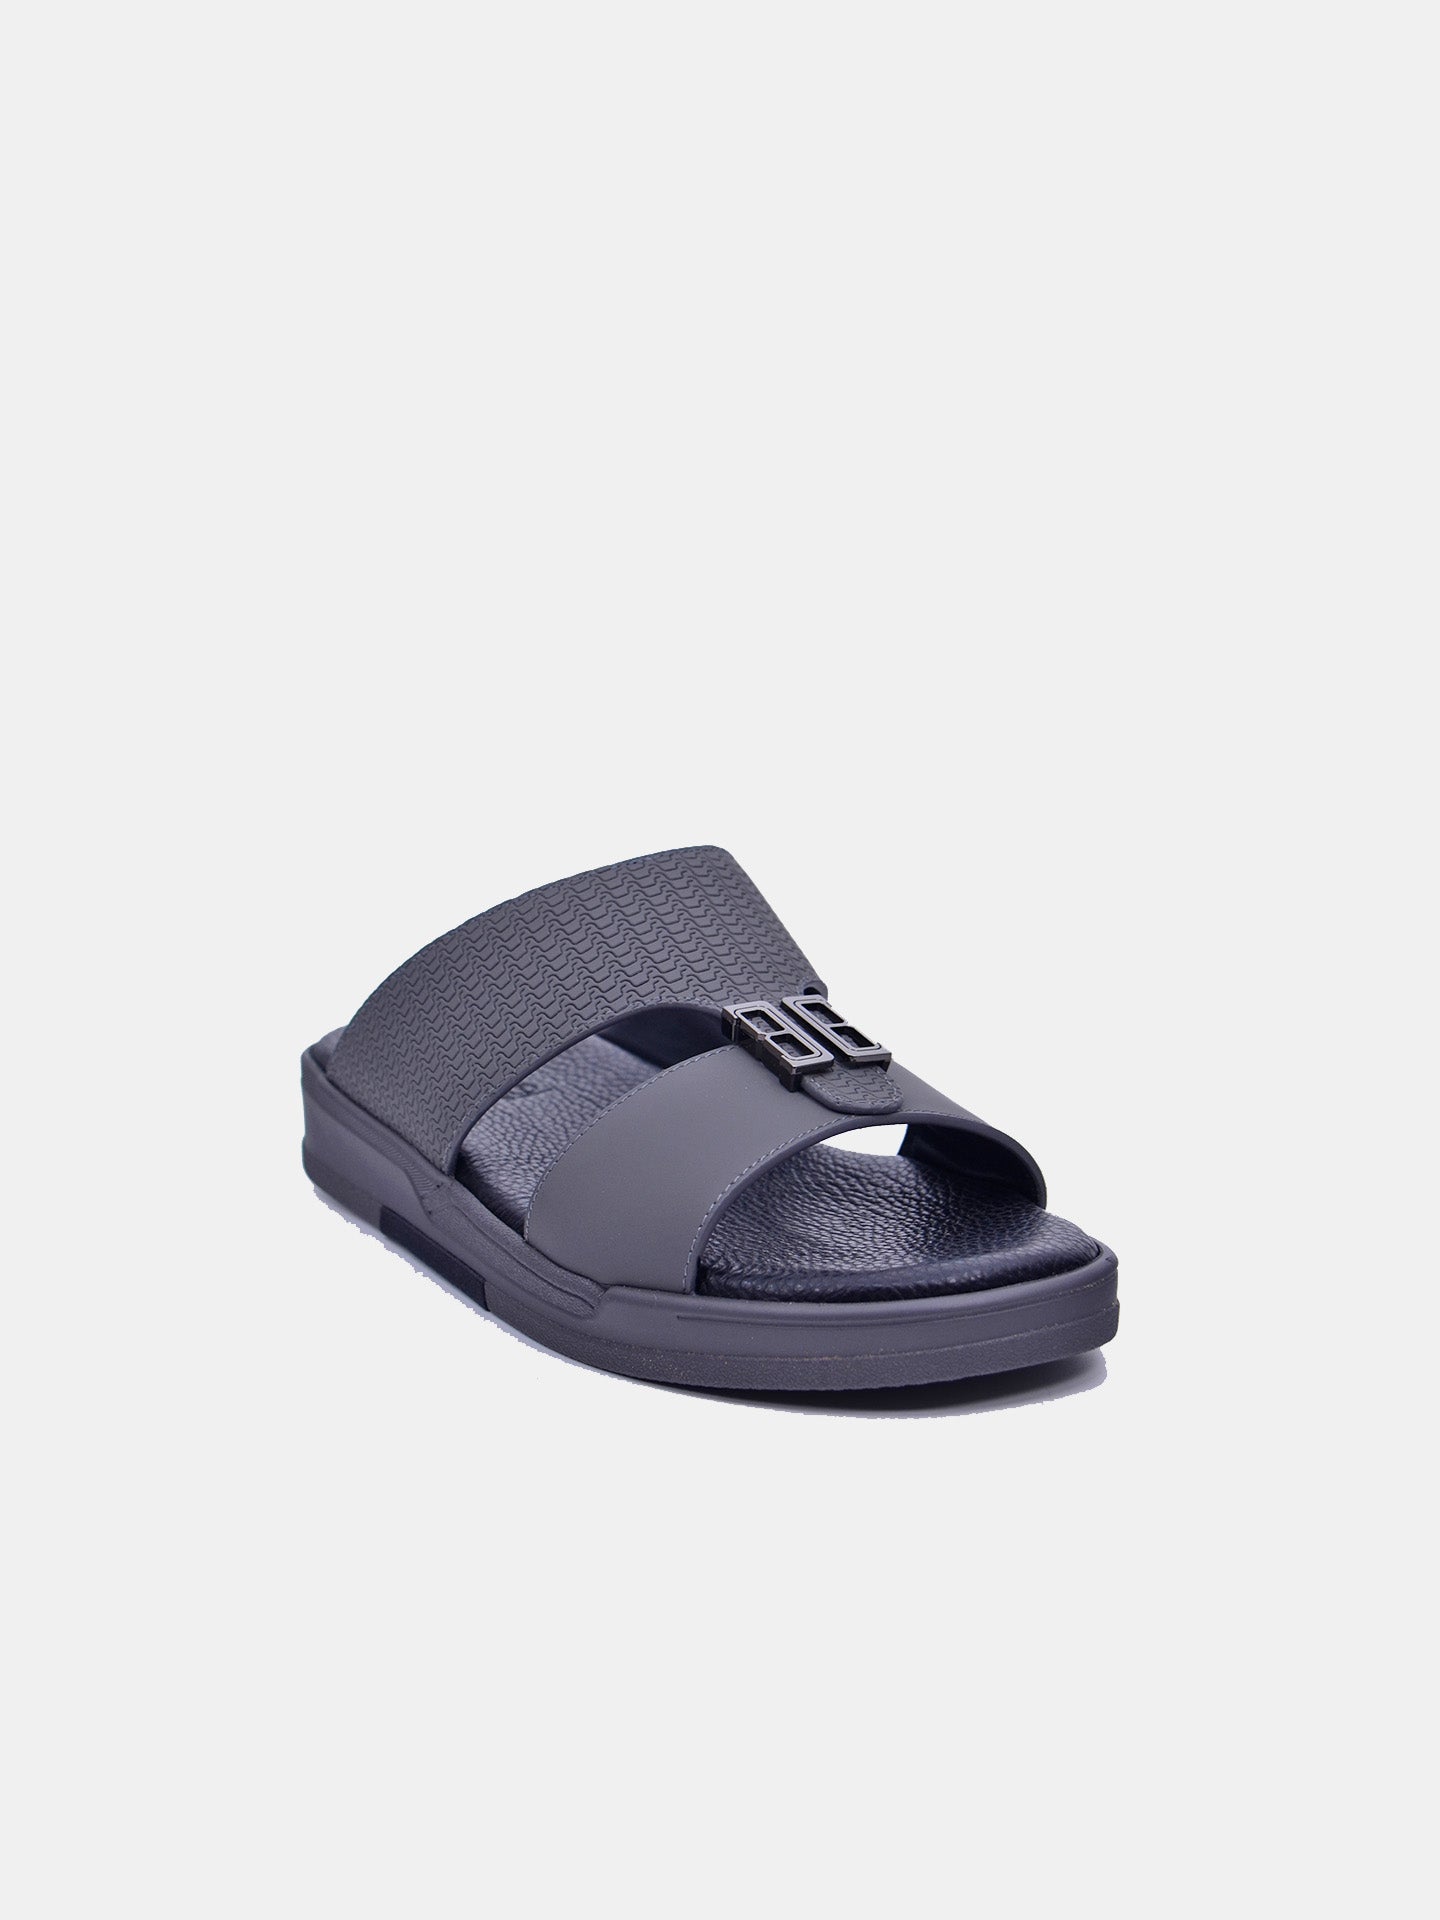 Barjeel Uno MSA-104 Boys Arabic Sandals #color_Grey